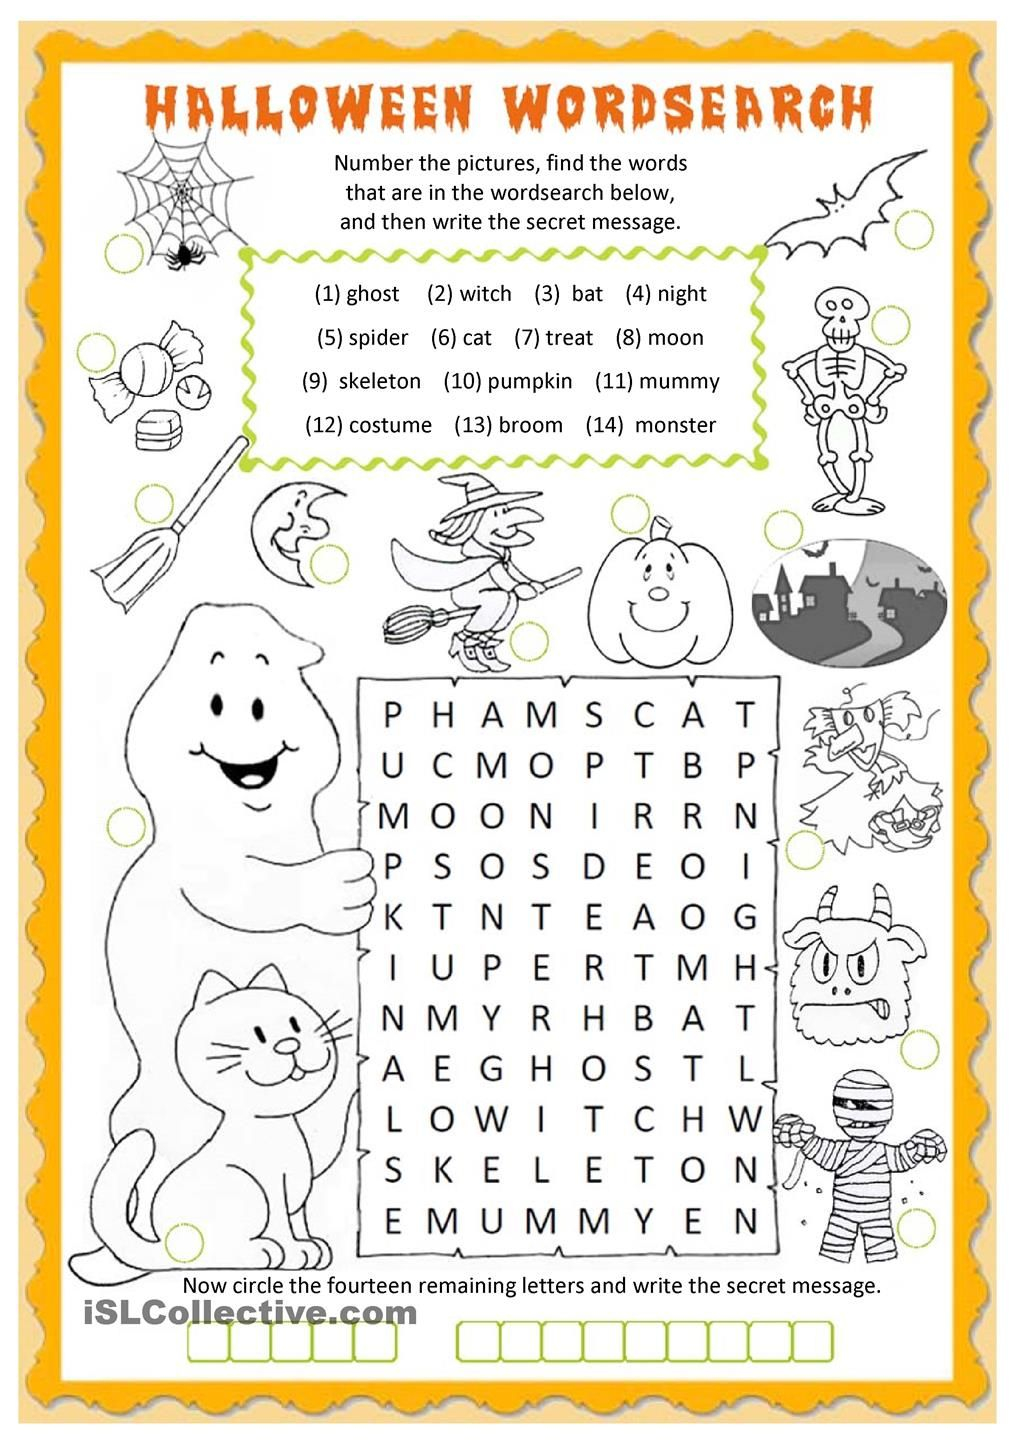 Halloween Wordsearch Worksheet - Free Esl Printable